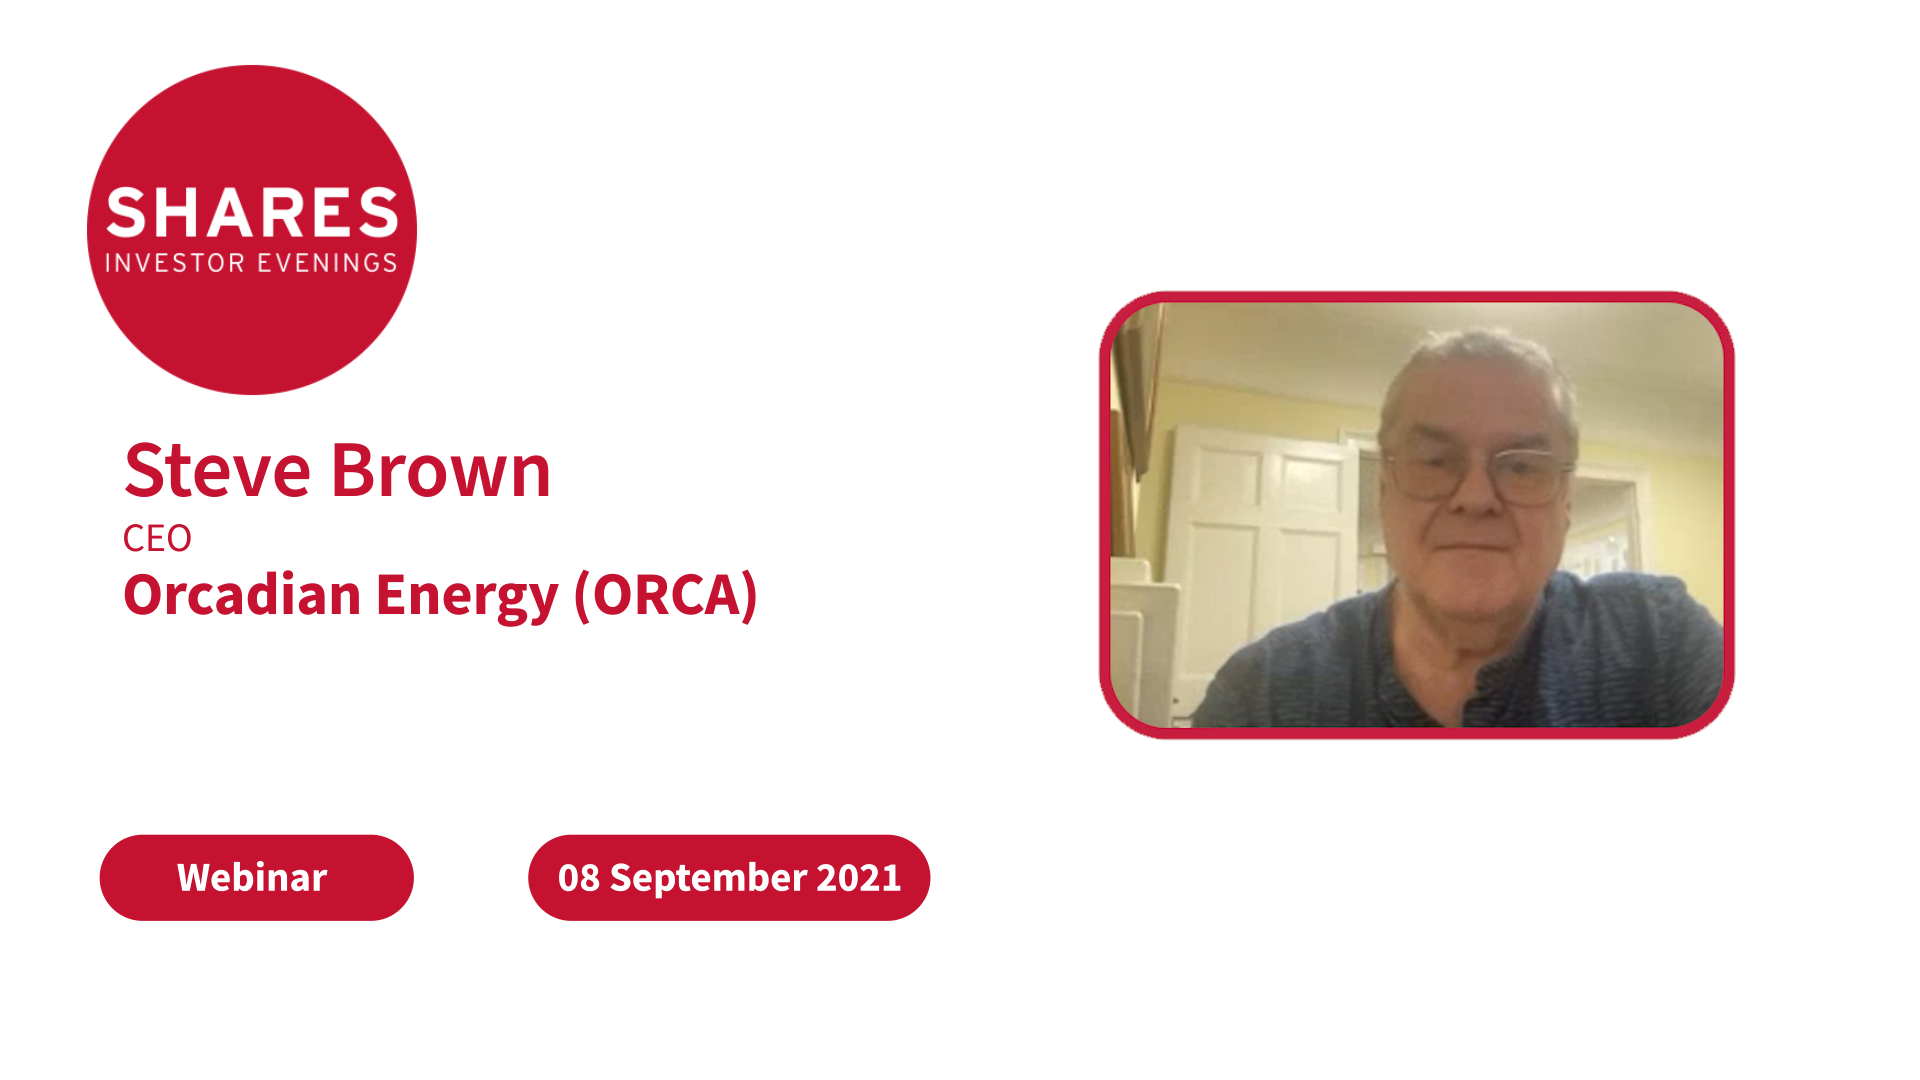 Orcadian Energy (ORCA) - Steve Brown, CEO